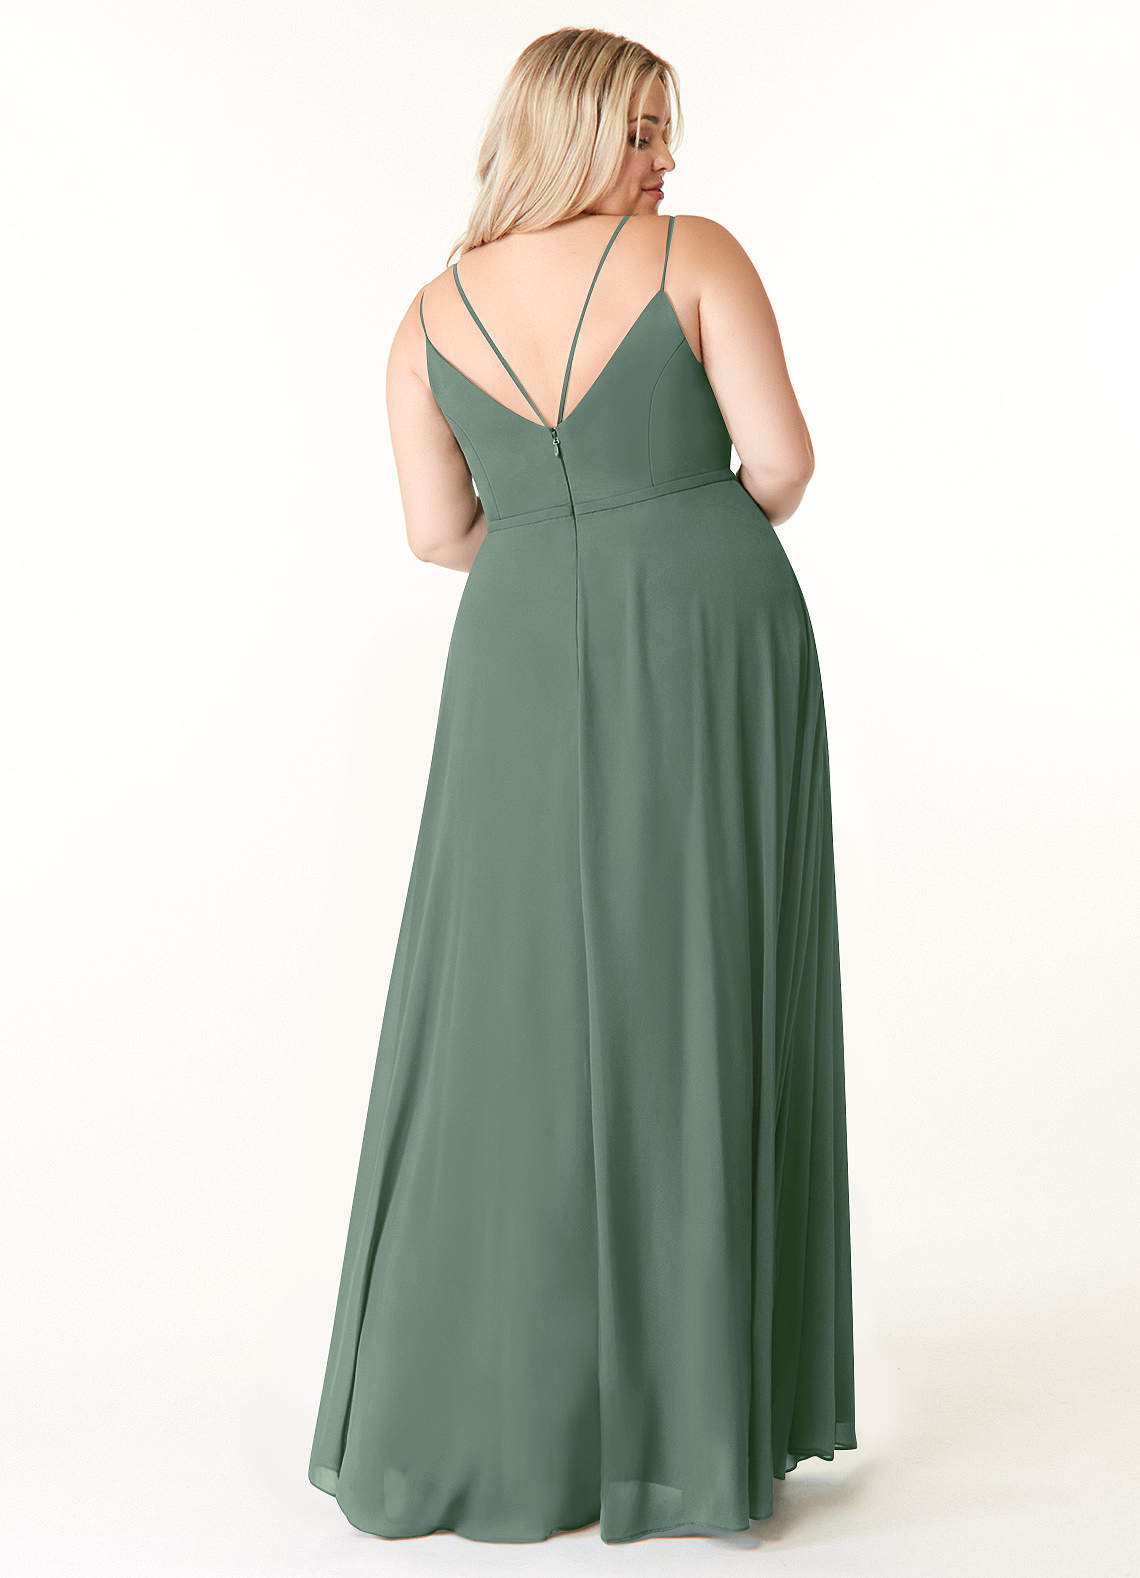 Azazie Janine Bridesmaid Dresses A-Line V-Neck Chiffon Floor-Length Dress image1